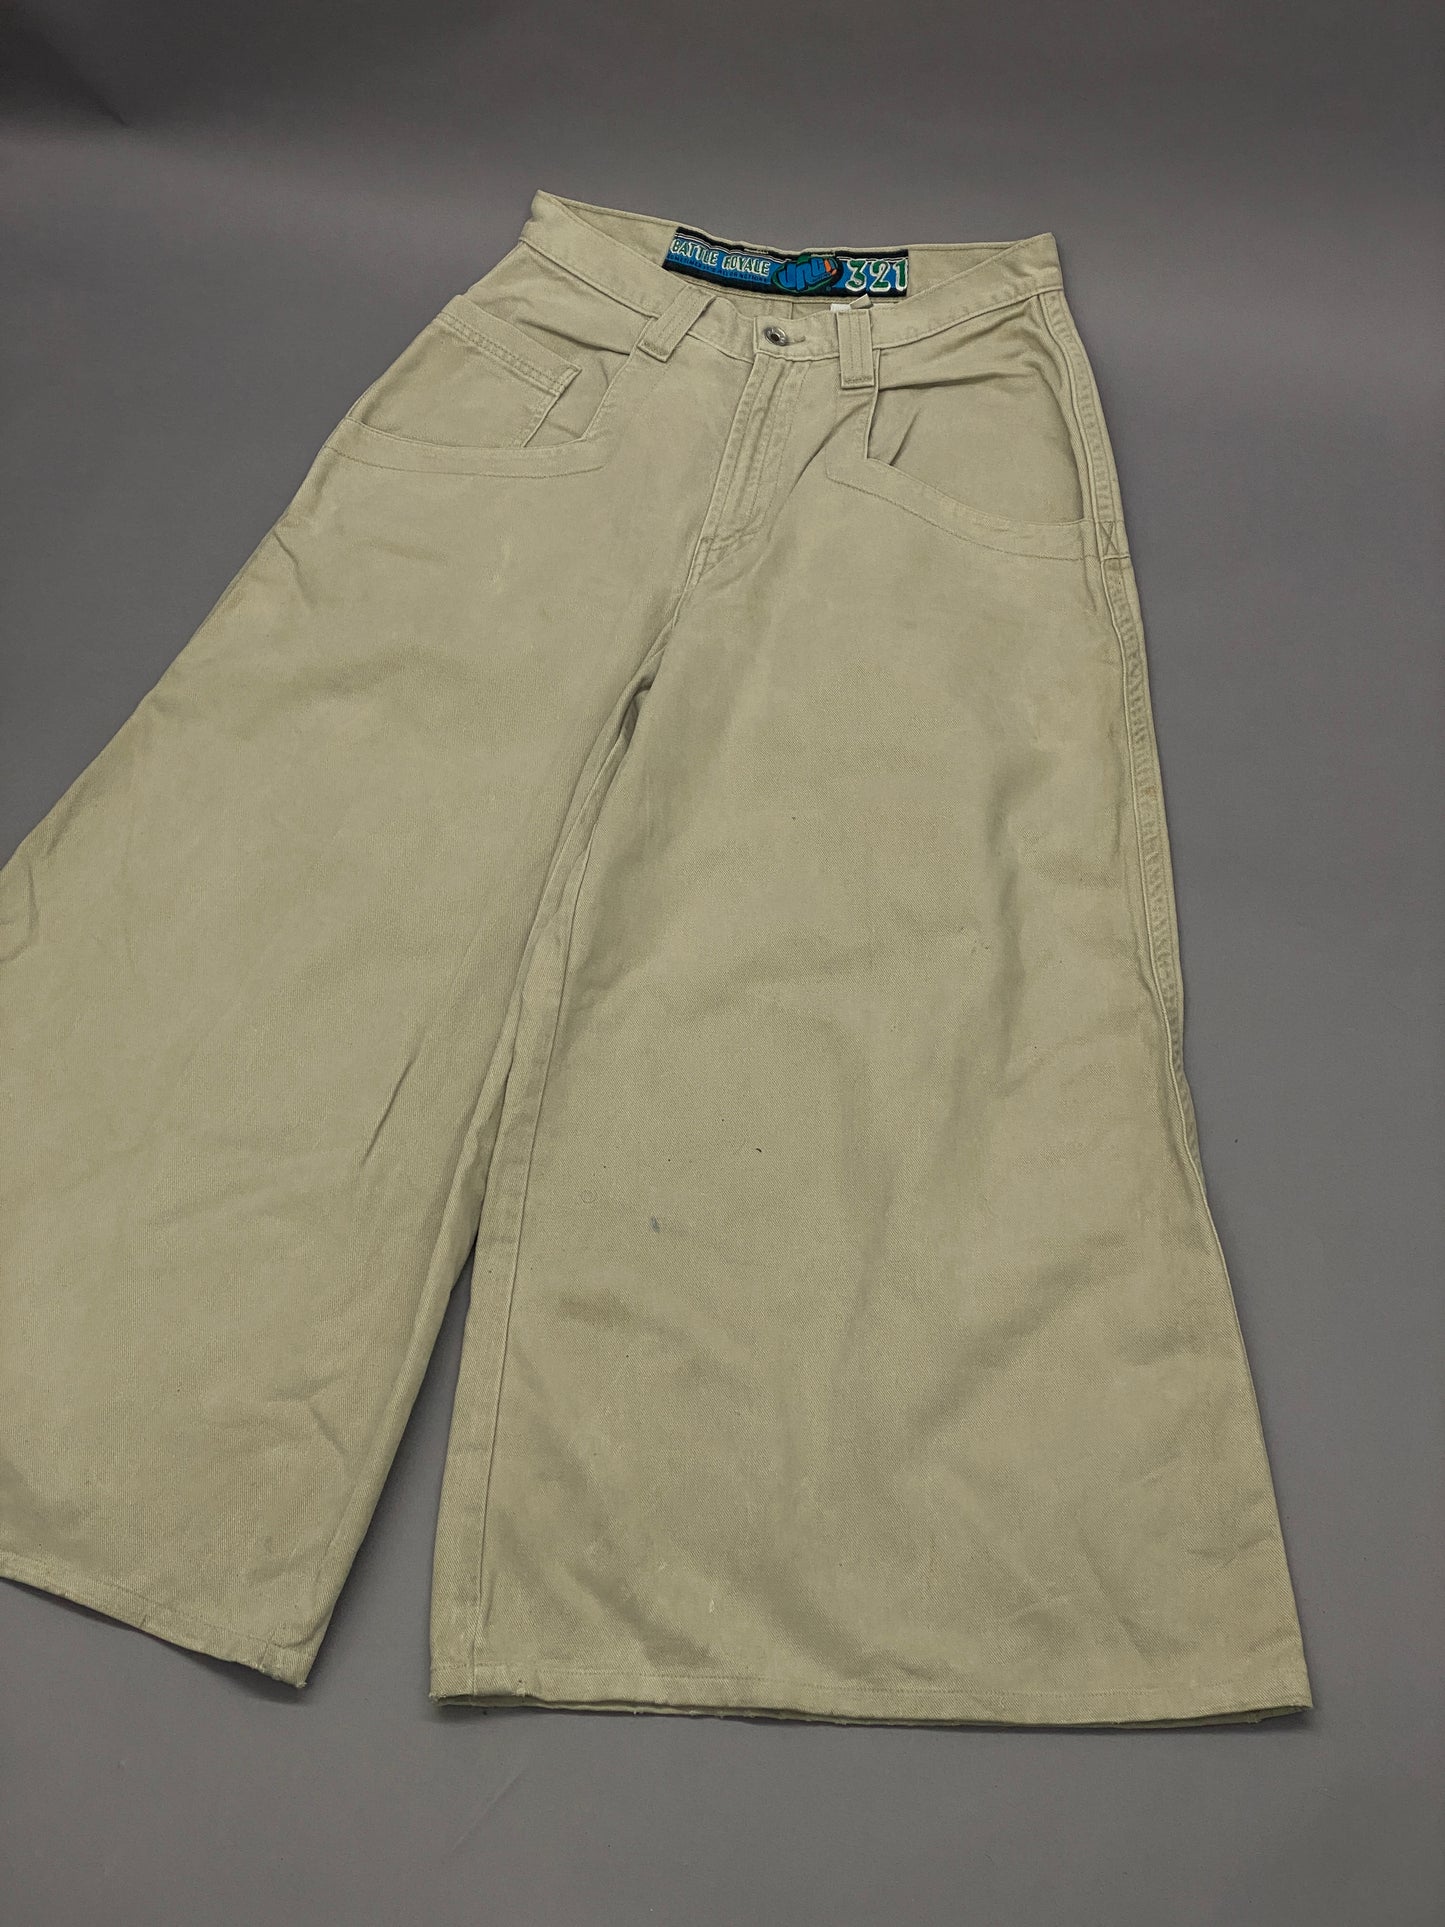 JNCO Jeans Battle Royale 321 Vintage Pants - 33